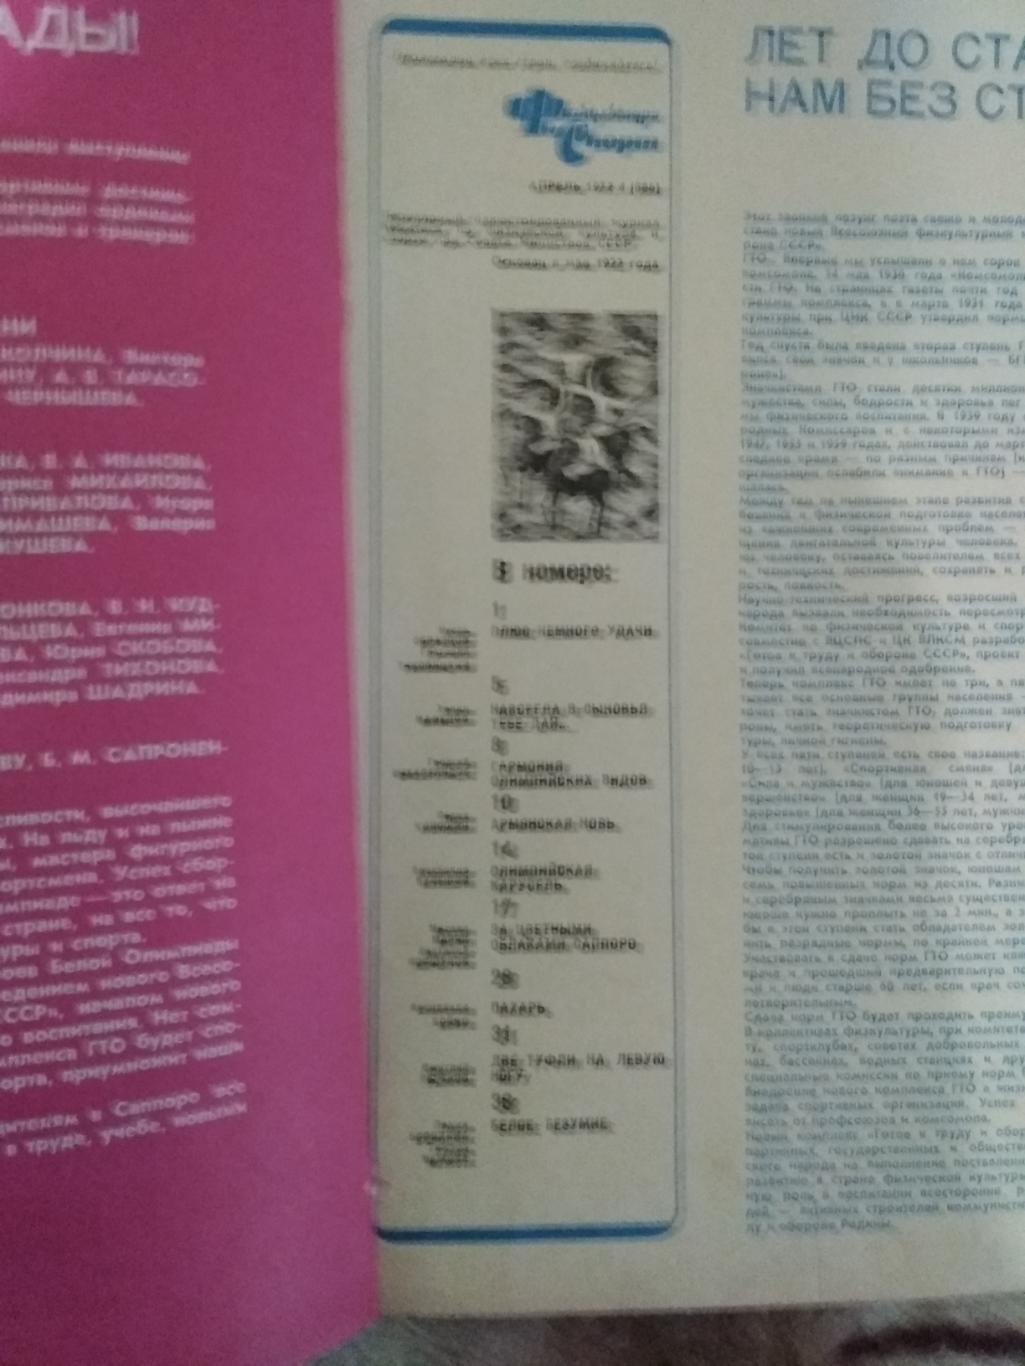 Журнал.Физкультура и спорт № 4 1972 г. (ФиС).(ОИ Саппоро.Япония). 1